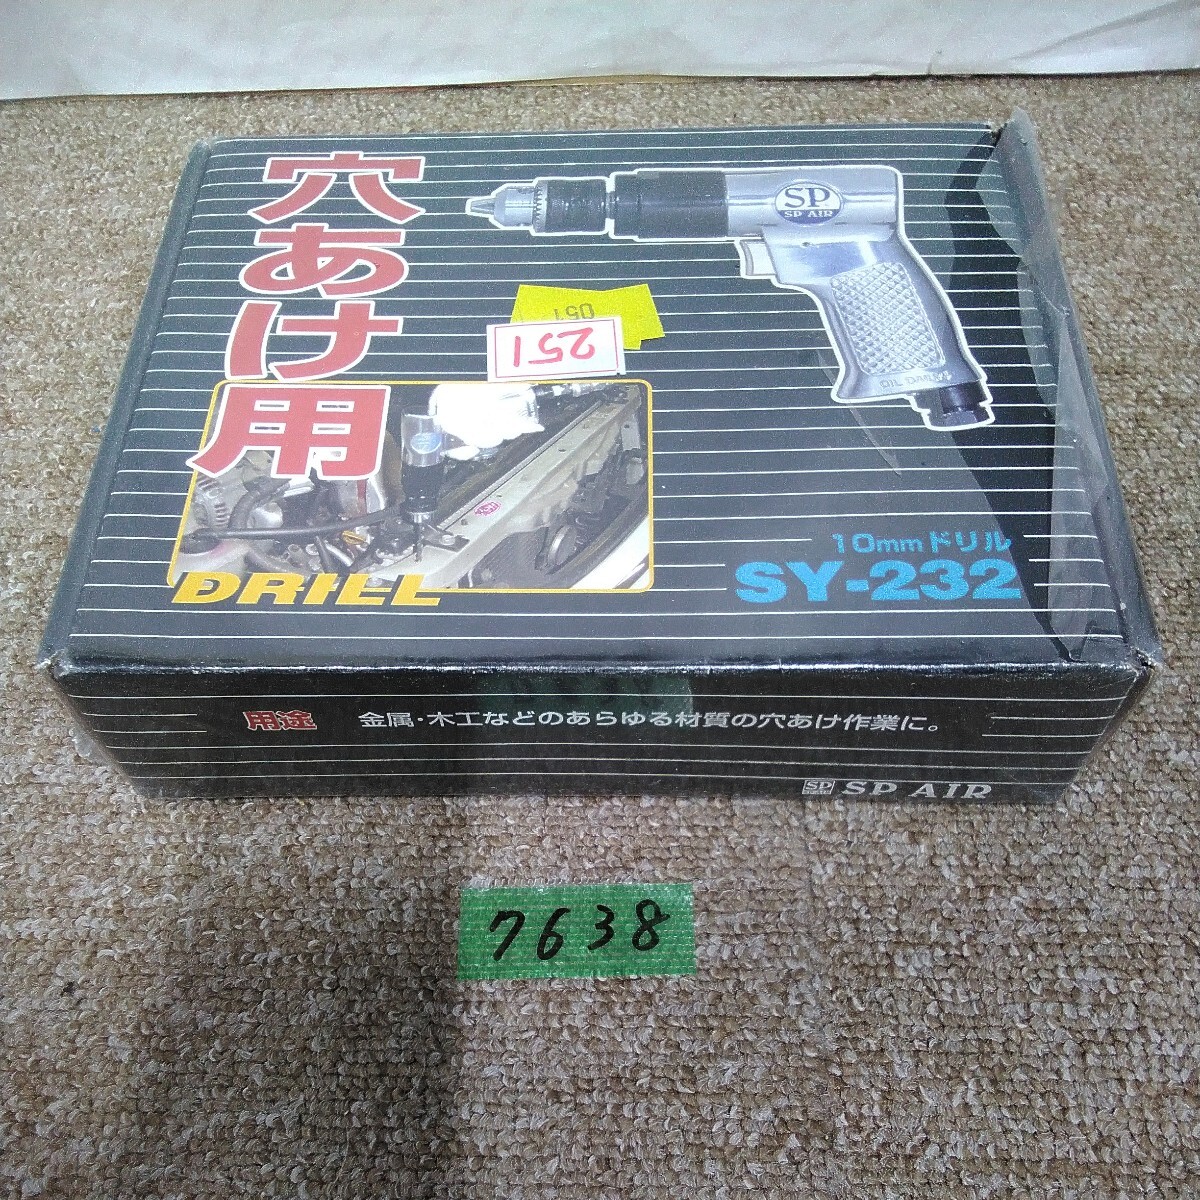 7638 стоимость доставки 520 иен новый товар не использовался SP AIR воздушный инструмент SY-232 10mm дрель сверление дрель-шуруповерт воздушный компрессор 